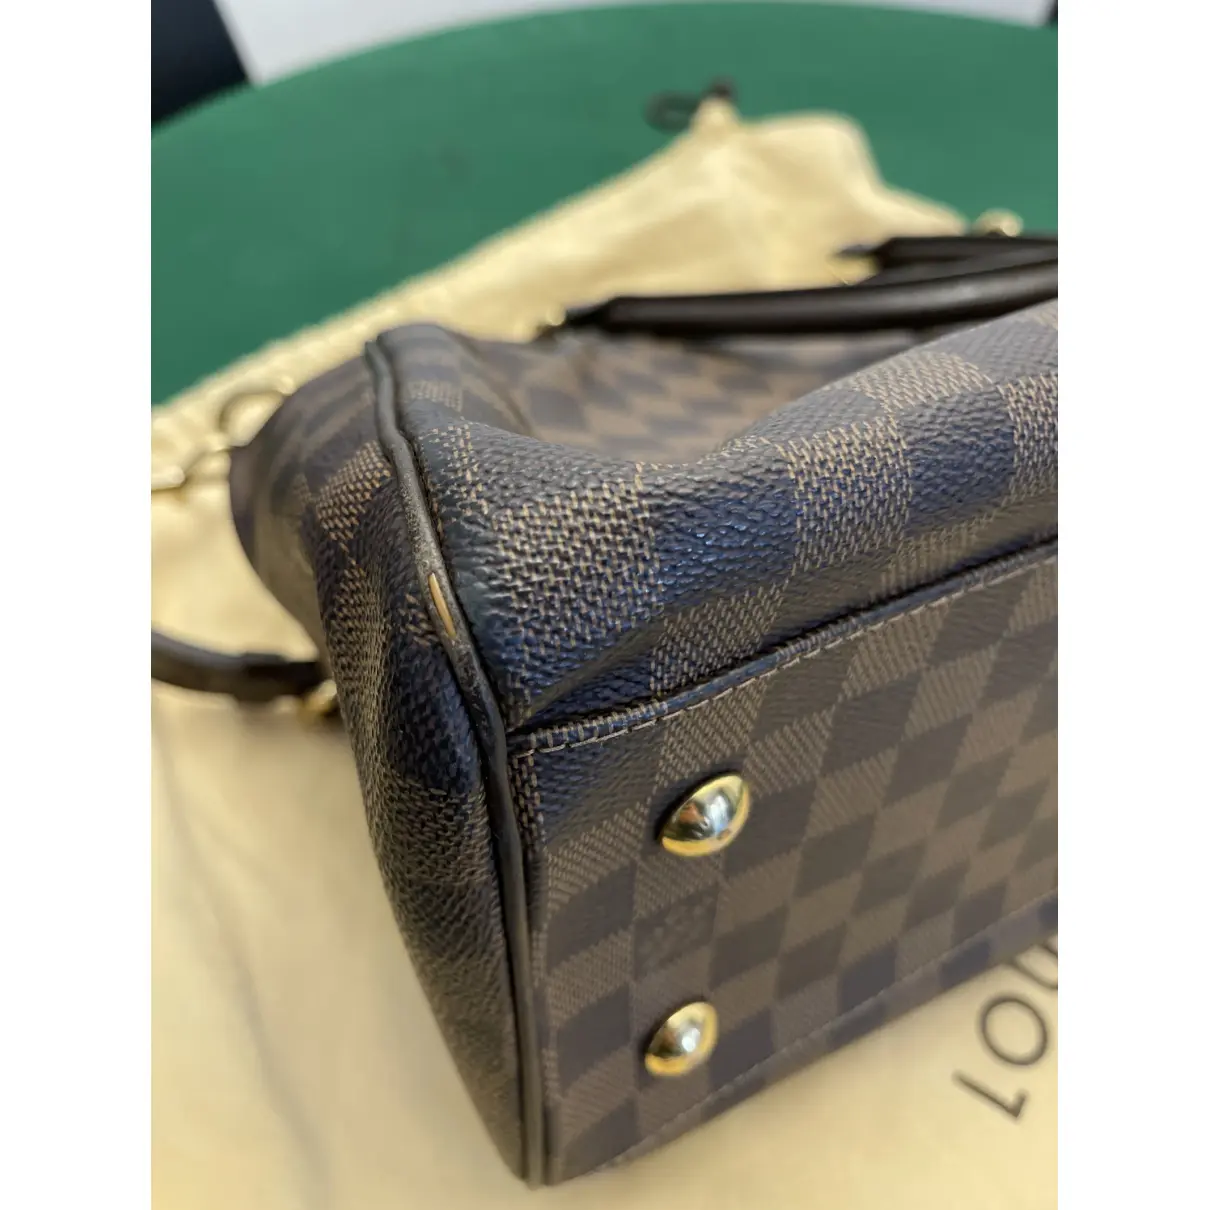 Trevi cloth handbag Louis Vuitton